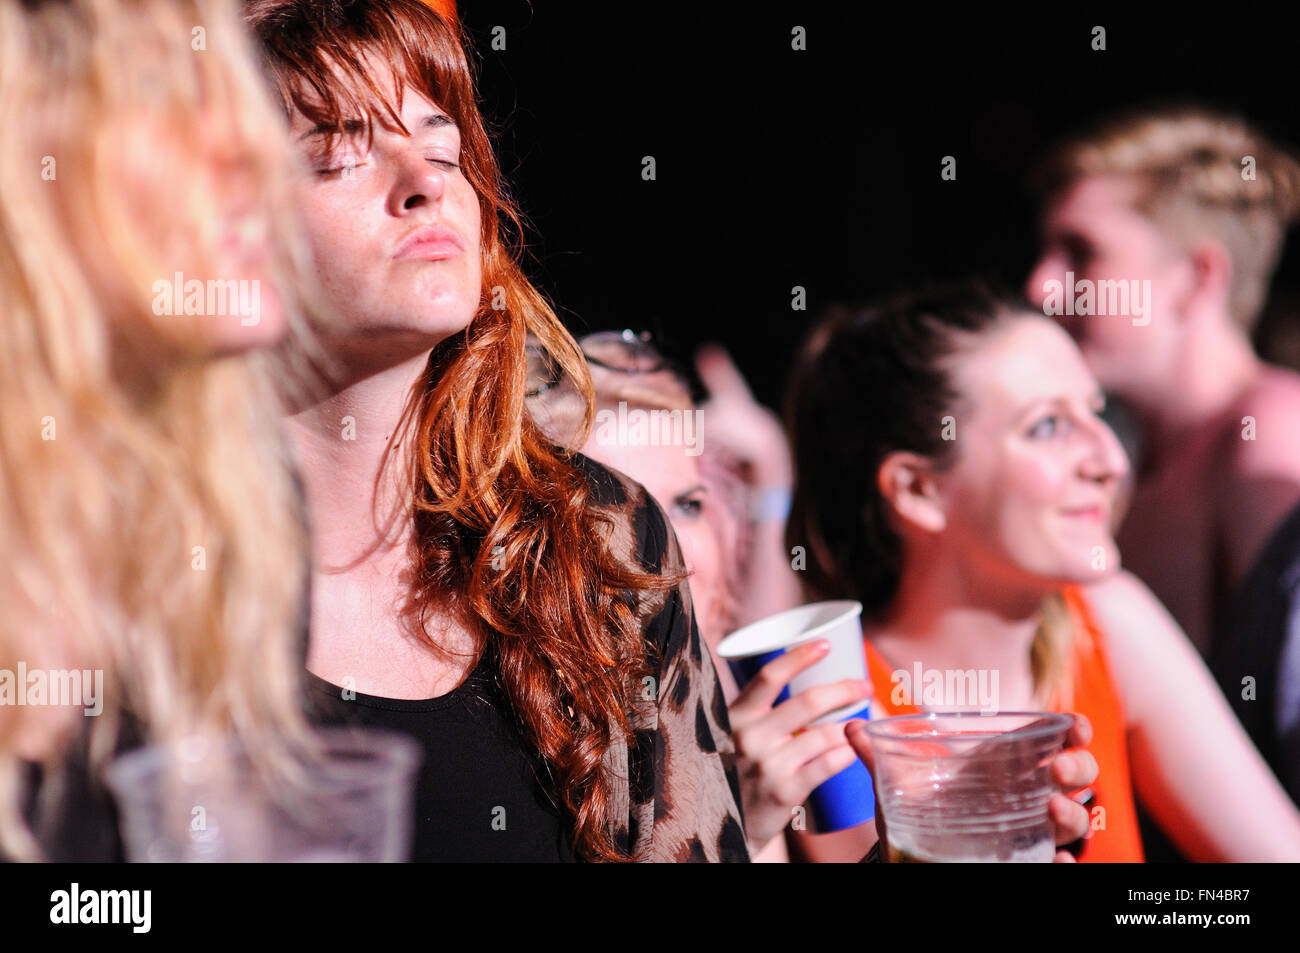 BENICASIM, ESPAGNE - 19 juillet : Femme rousse de l'auditoire applaudir à FIB (Festival Internacional de Benicassim) 2013. Banque D'Images